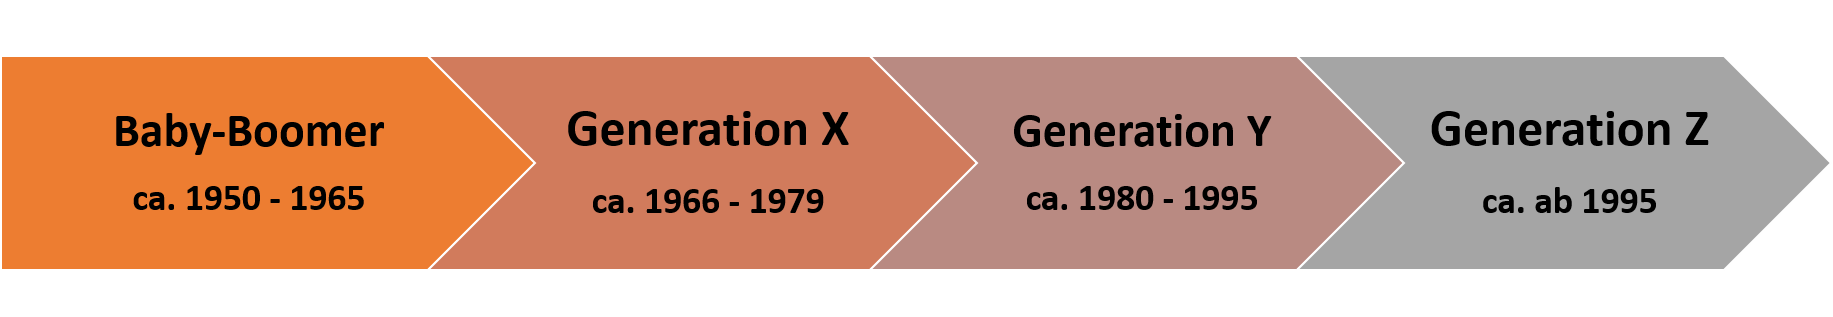 Pfeil-Diagramm zur Darstellung der Generationen Baby-Boomer, X, Y und Z